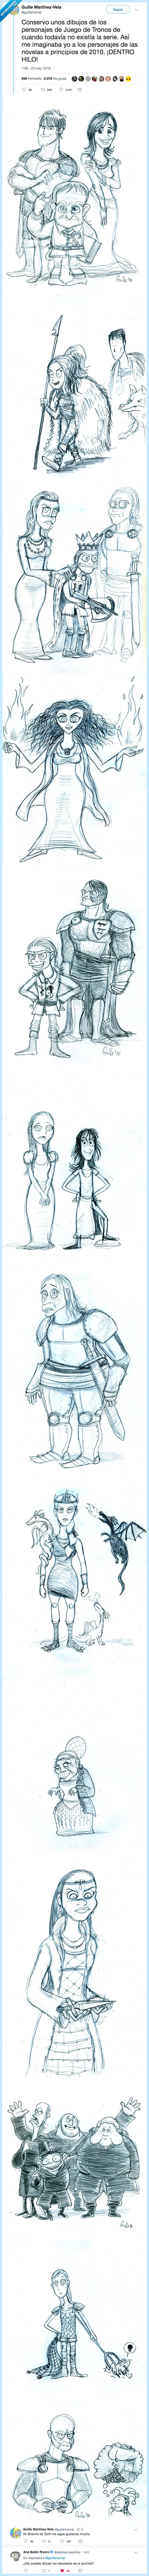 518088 - Dibujó los personajes de Juego de Tronos antes de existiera la serie y los clavó, por @guillemarvel